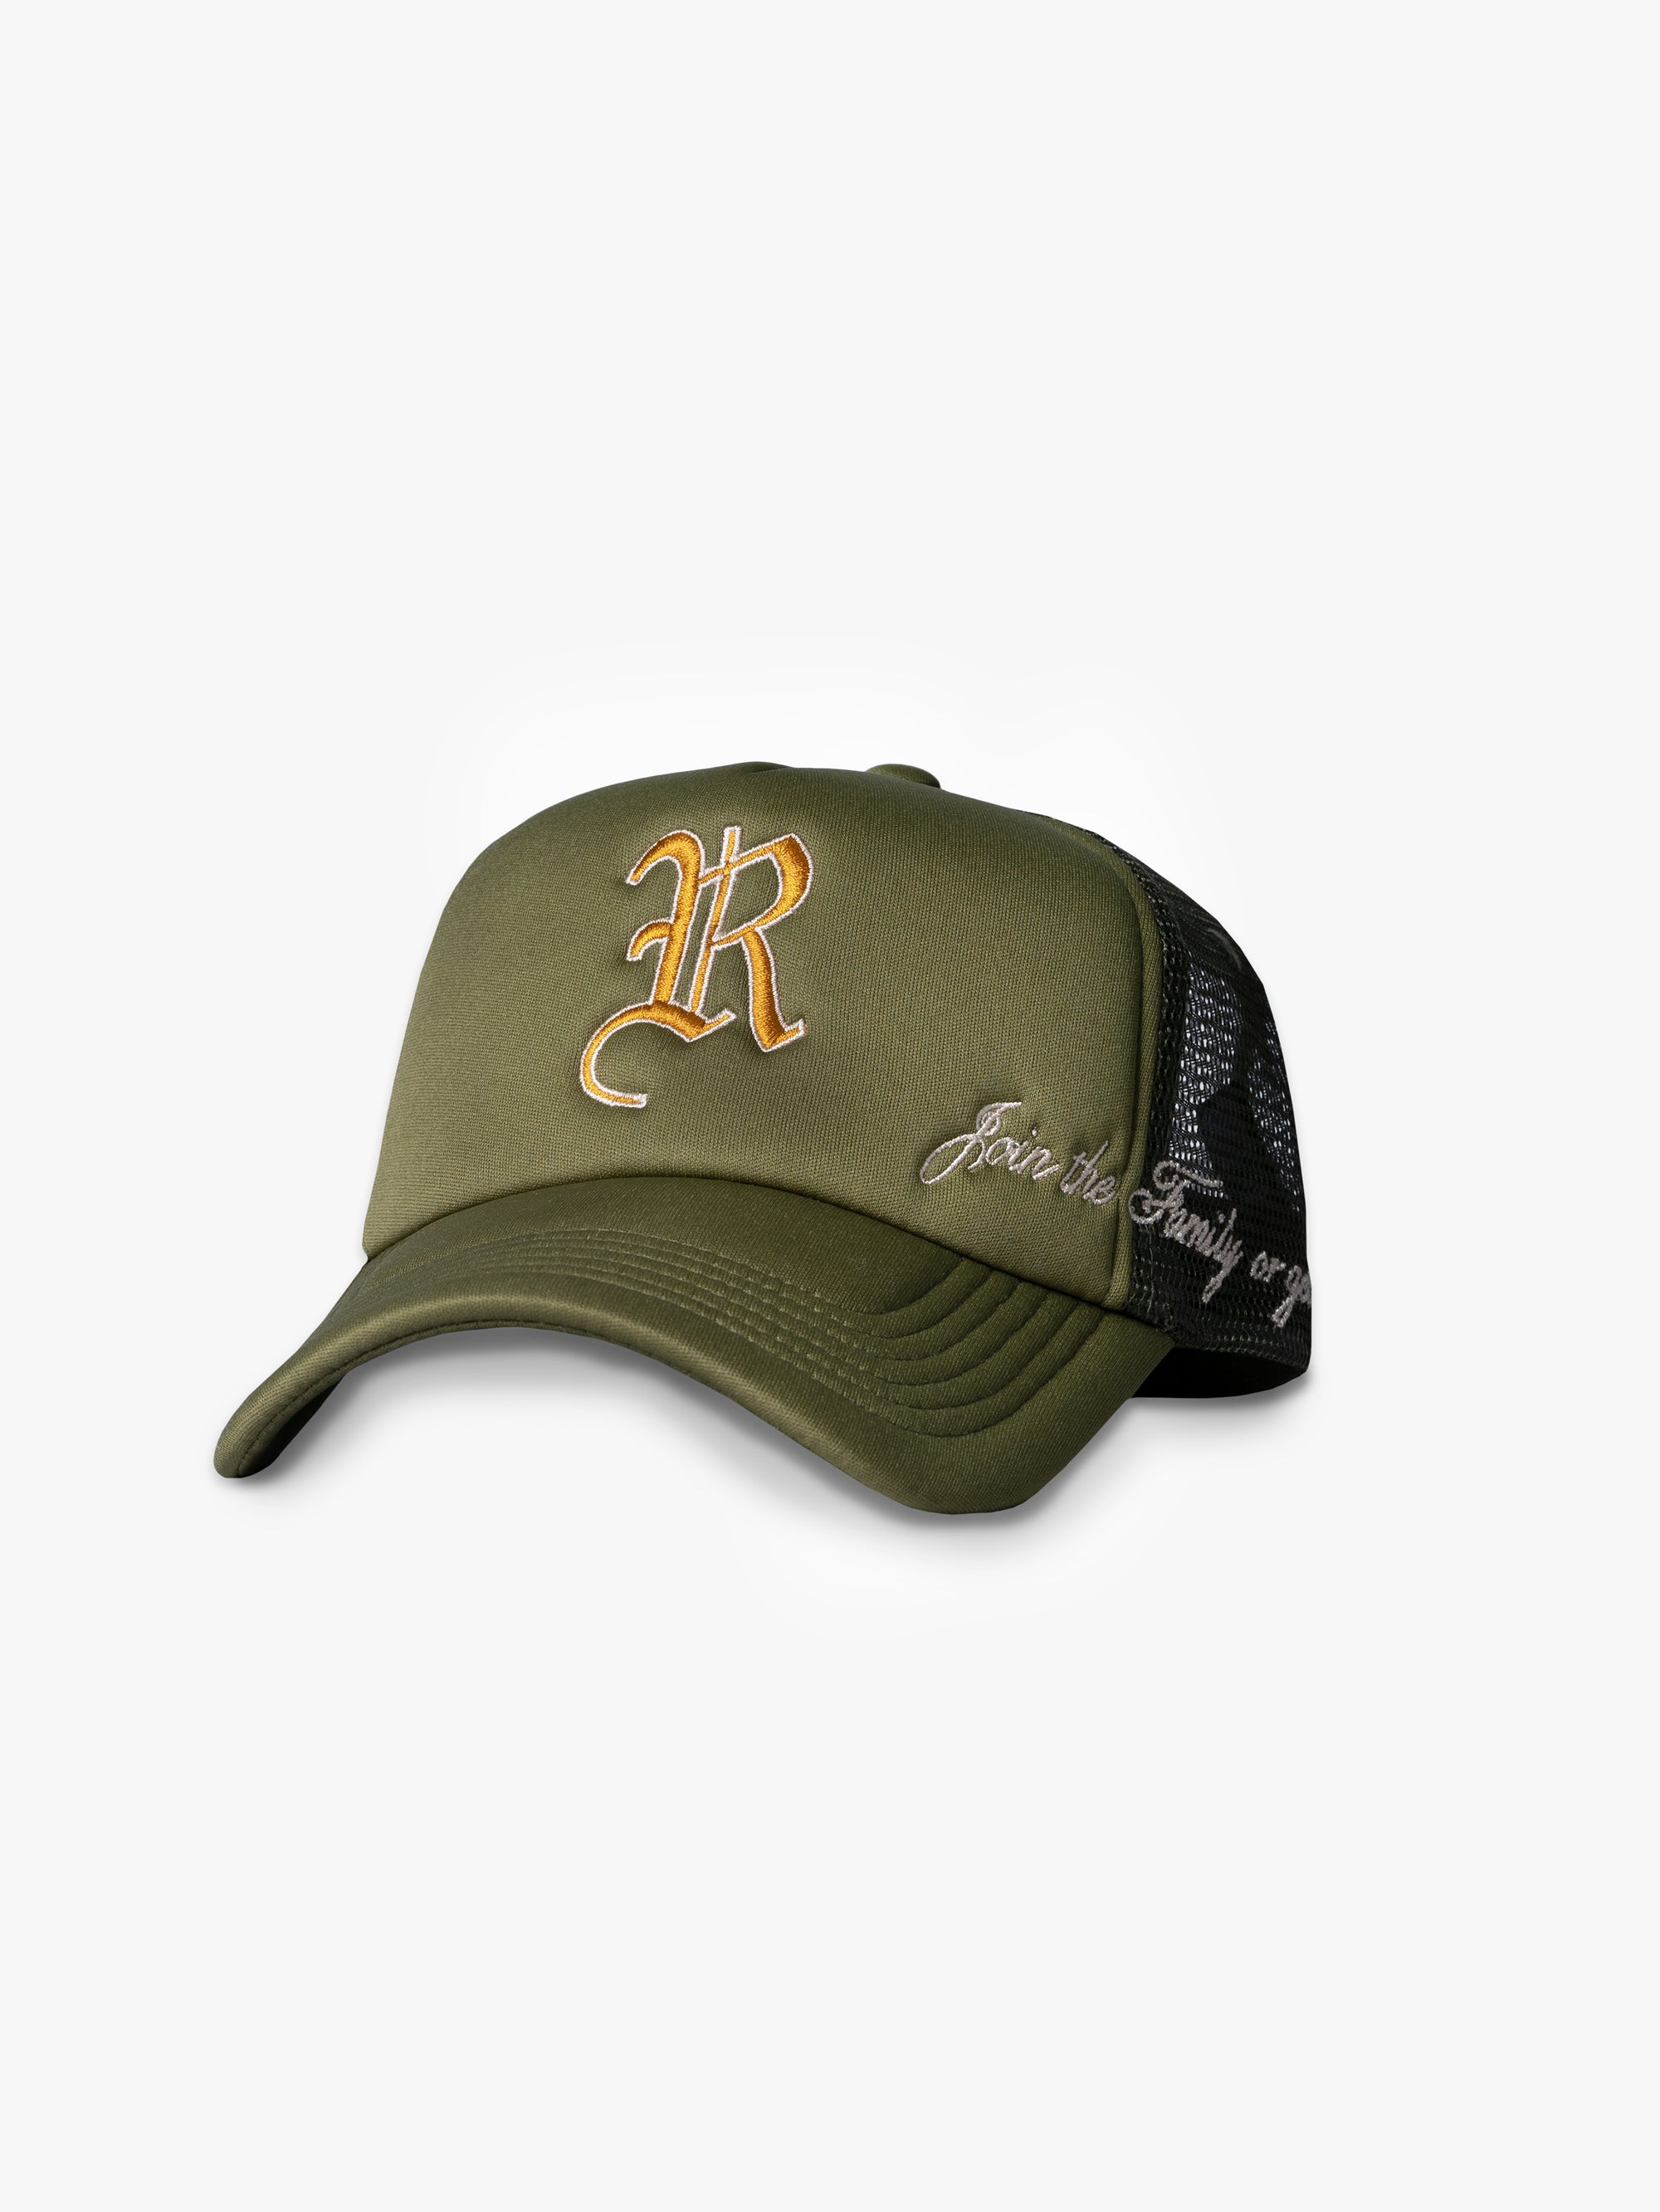 CAP 'R'  - OLIVE GREEN